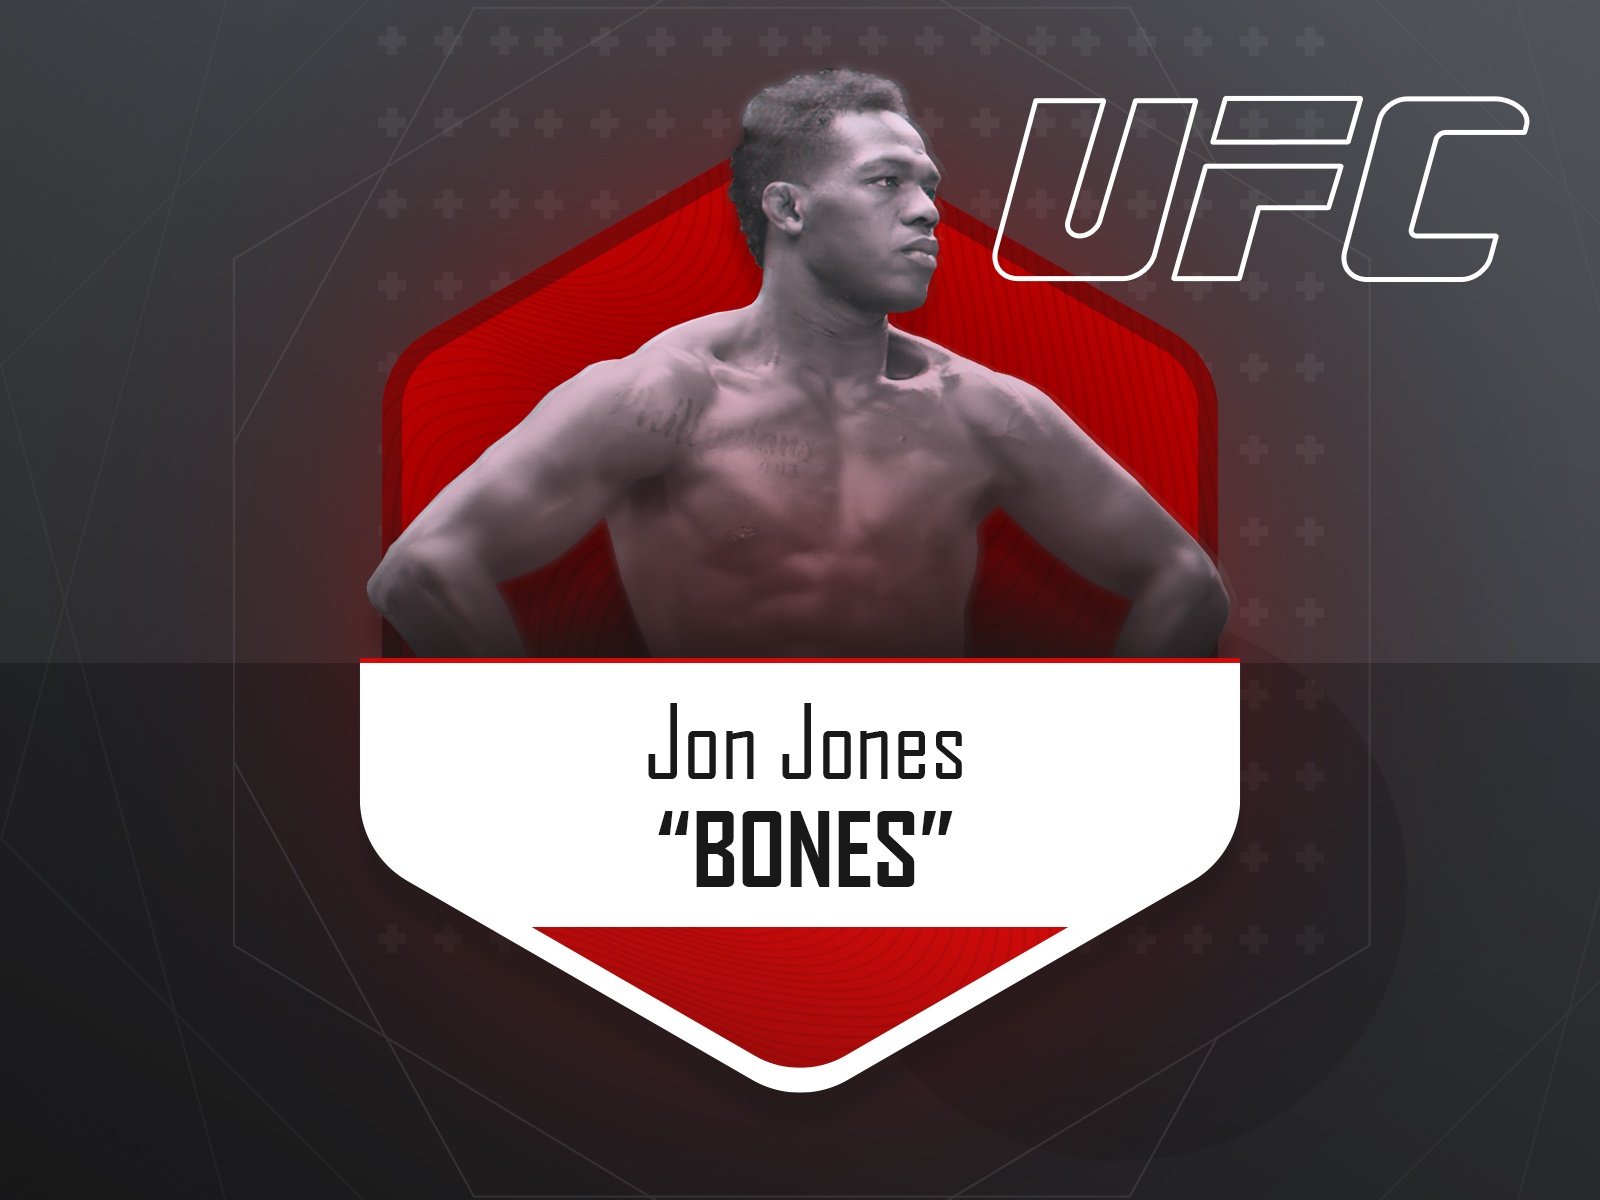 Jon Jones - UFC fighter